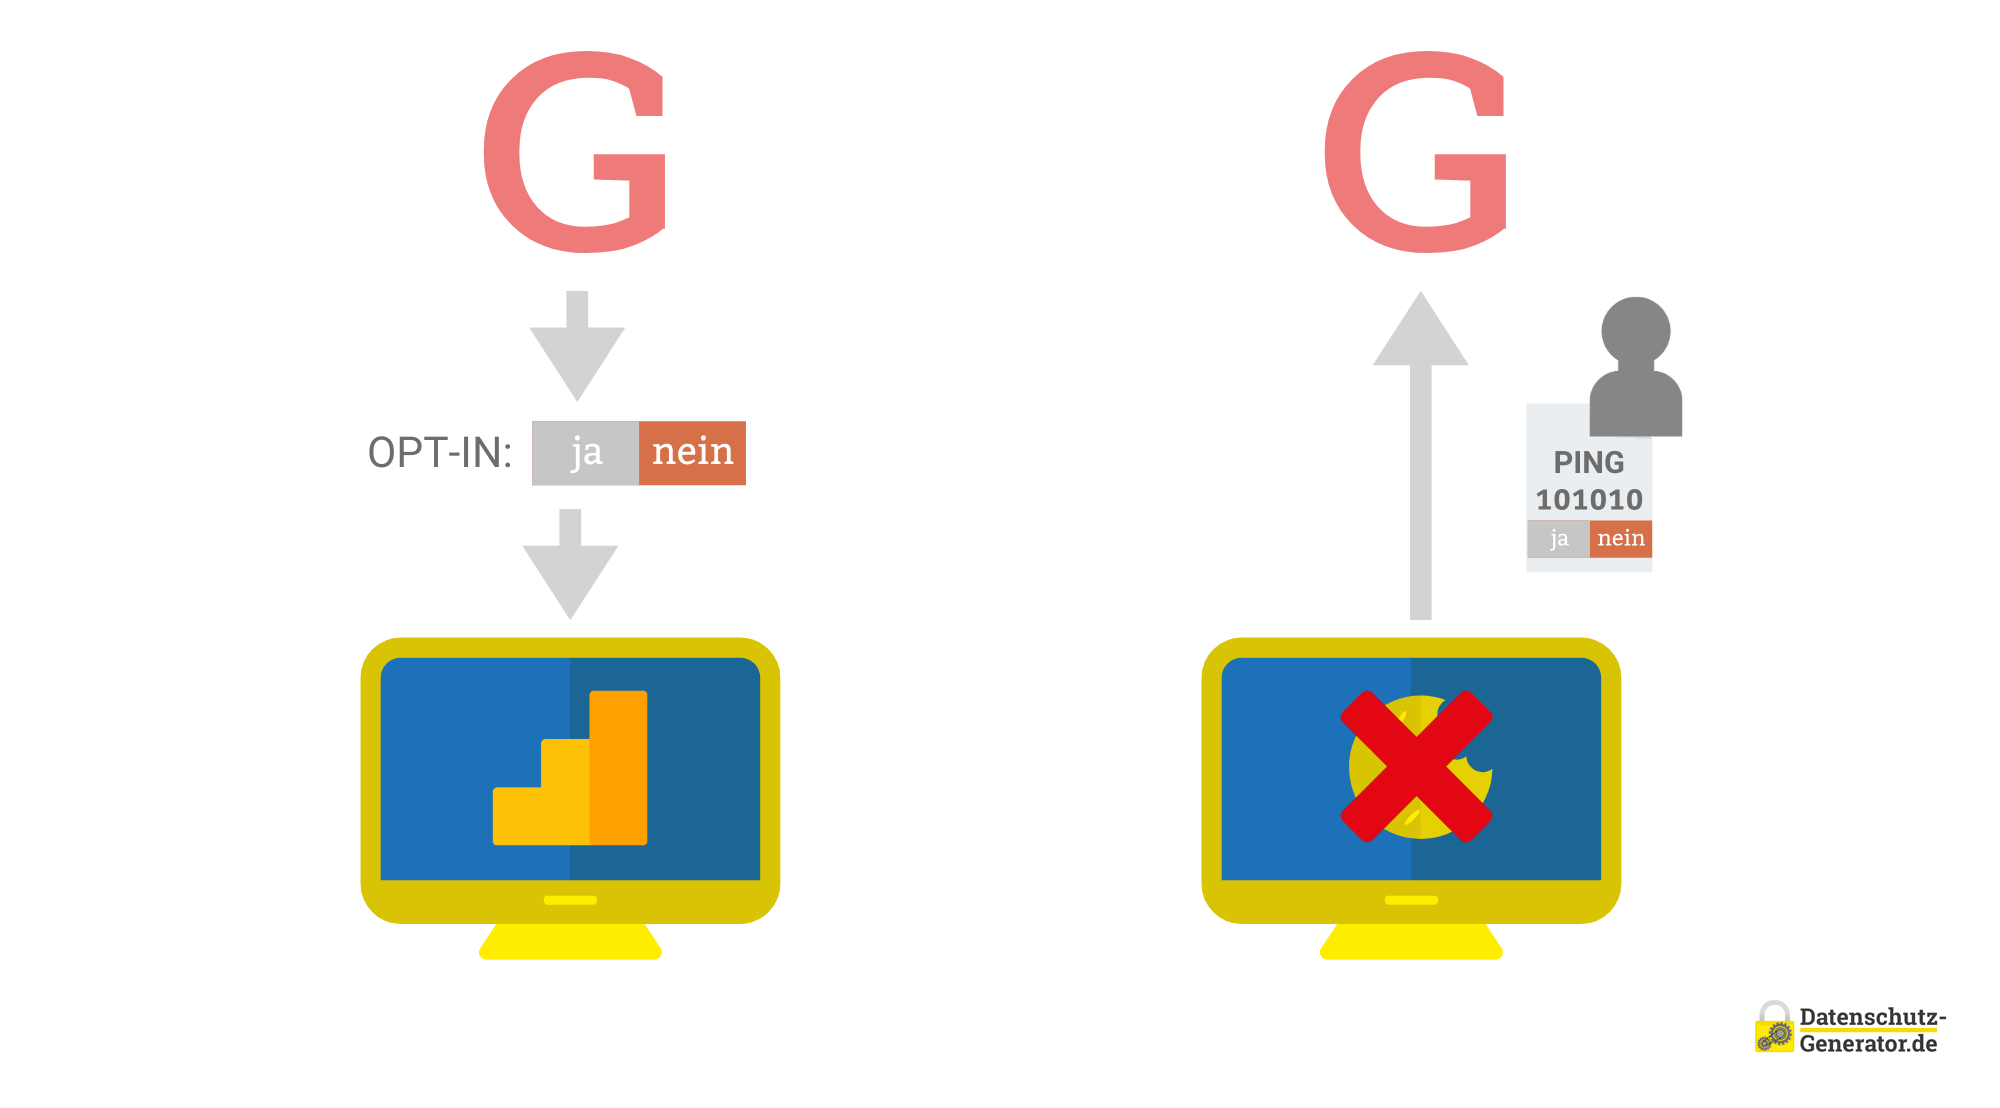 Schematische Darstellung des erweiterten Consent-Modes mit einem roten 'G' oben, Pfeilen, die Datenflussrichtungen anzeigen, einem Computermonitor mit gelben durchgekreuztem Kreis (Cookie) und einem symbolisierten Datensatz, der an G gesendet wird (User-Icon mit Binärcode).